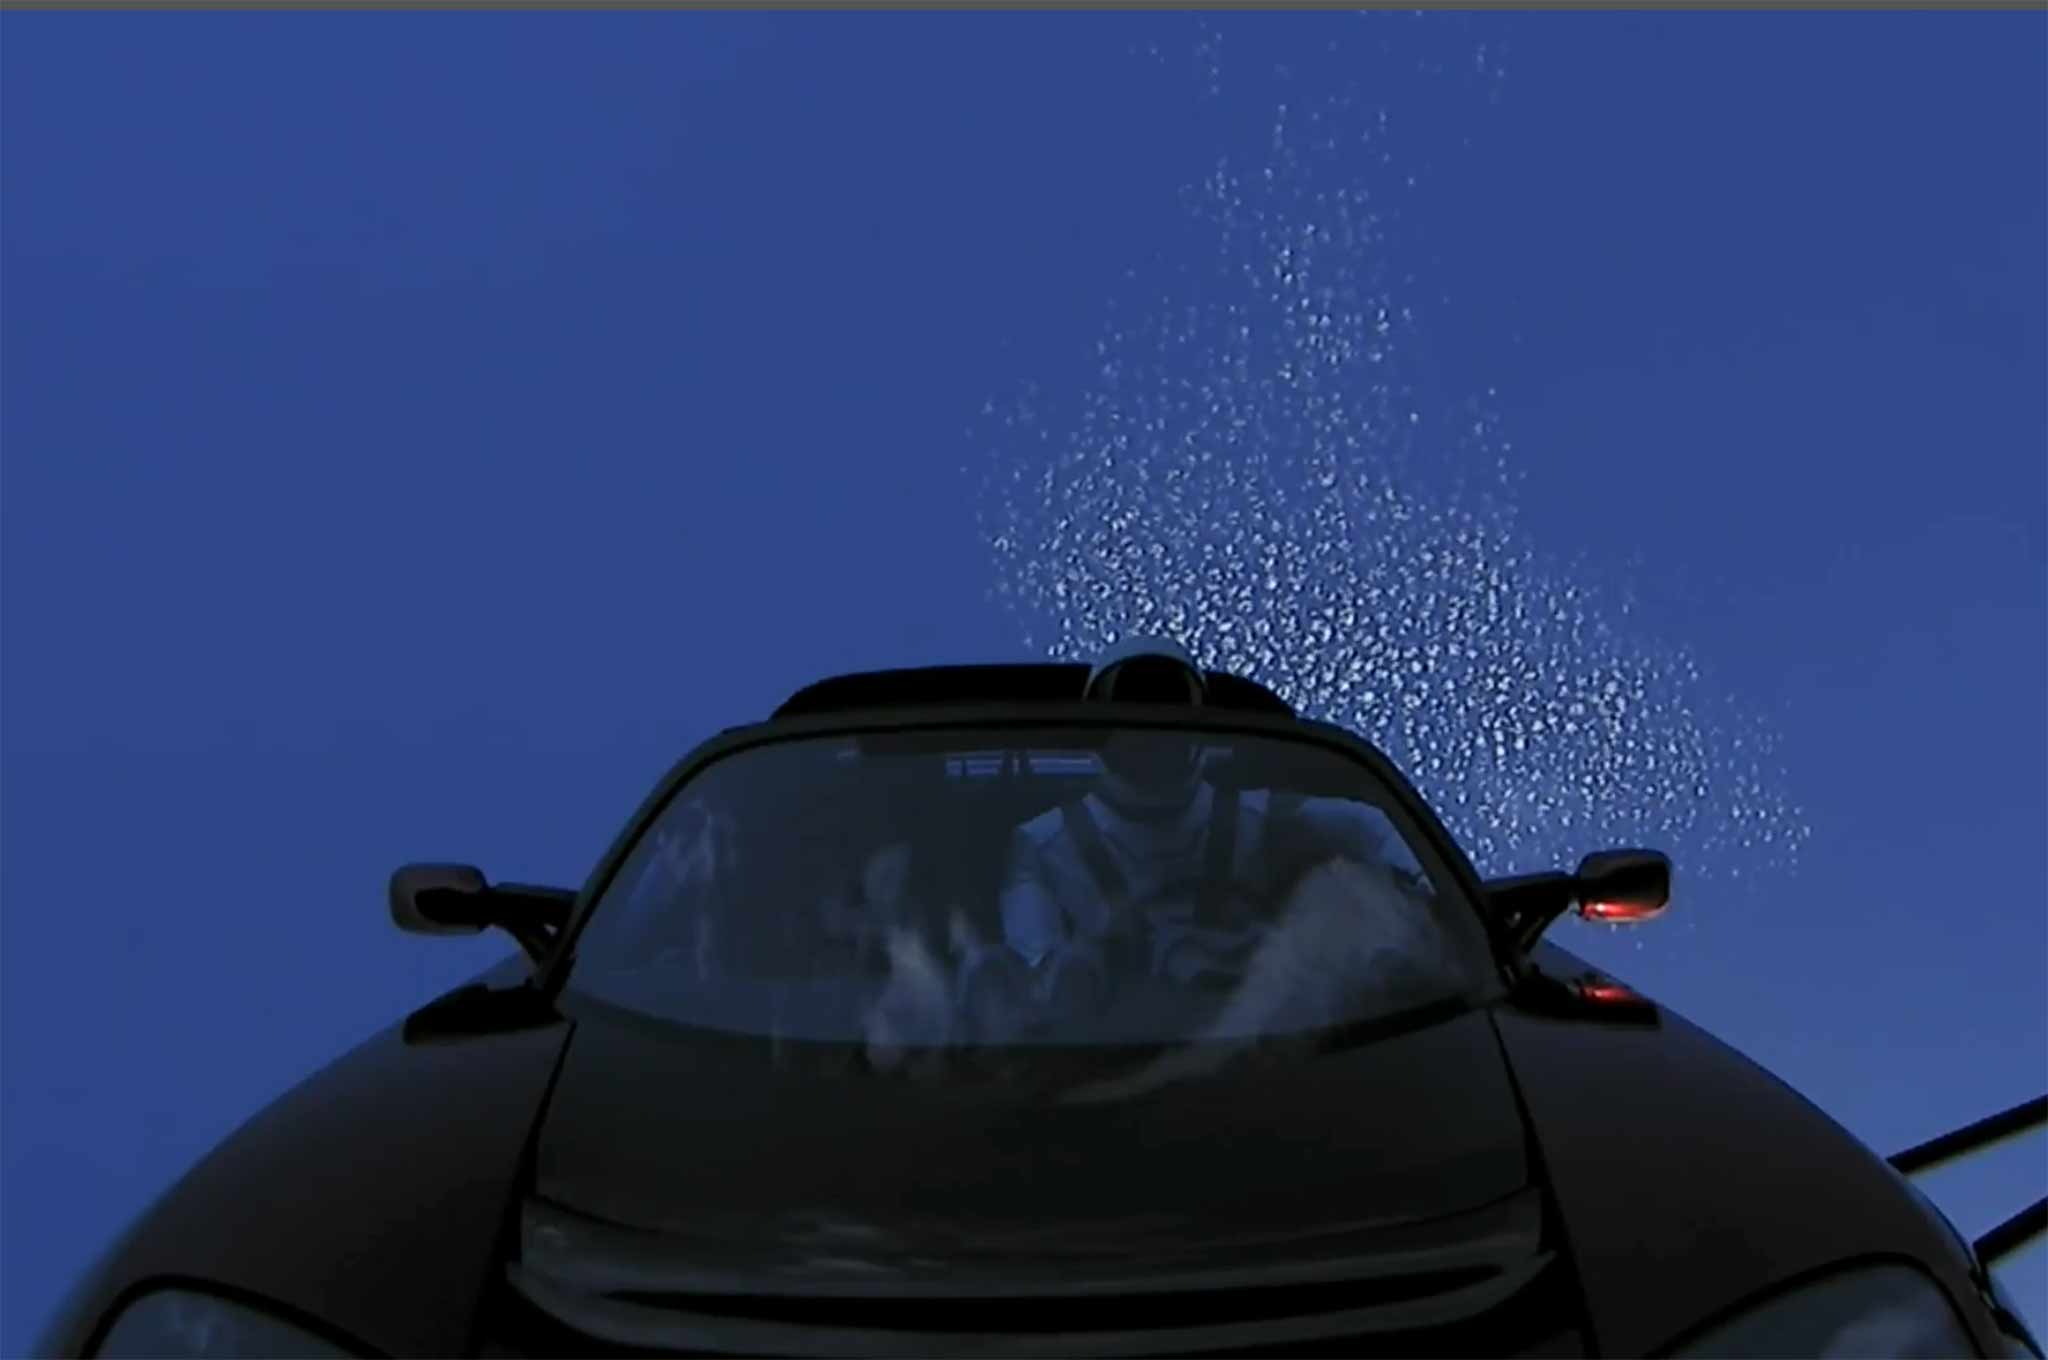 Tesla-Roadster-in-space-02.jpg